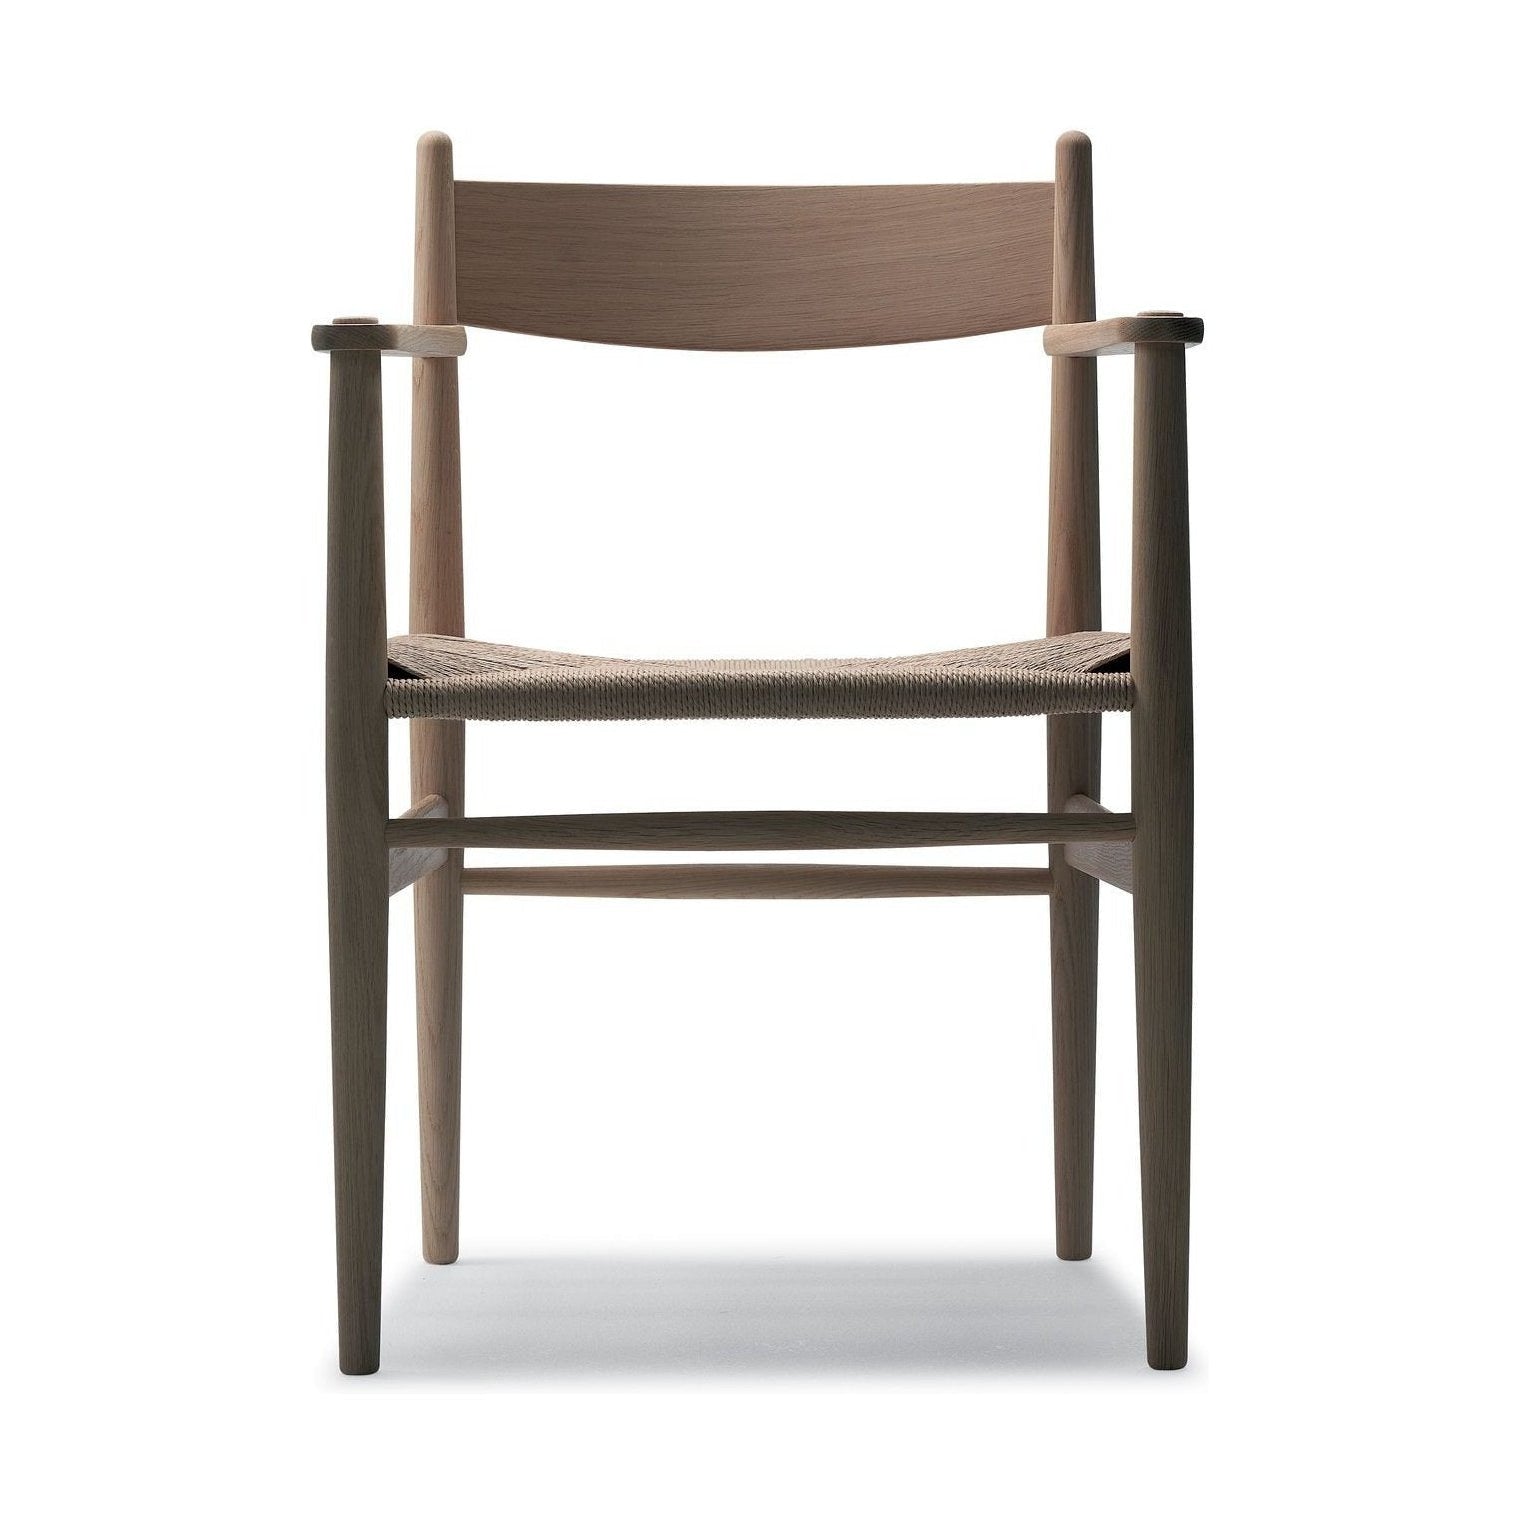 Carl Hansen CH37 -stol, tvålad ek/naturlig